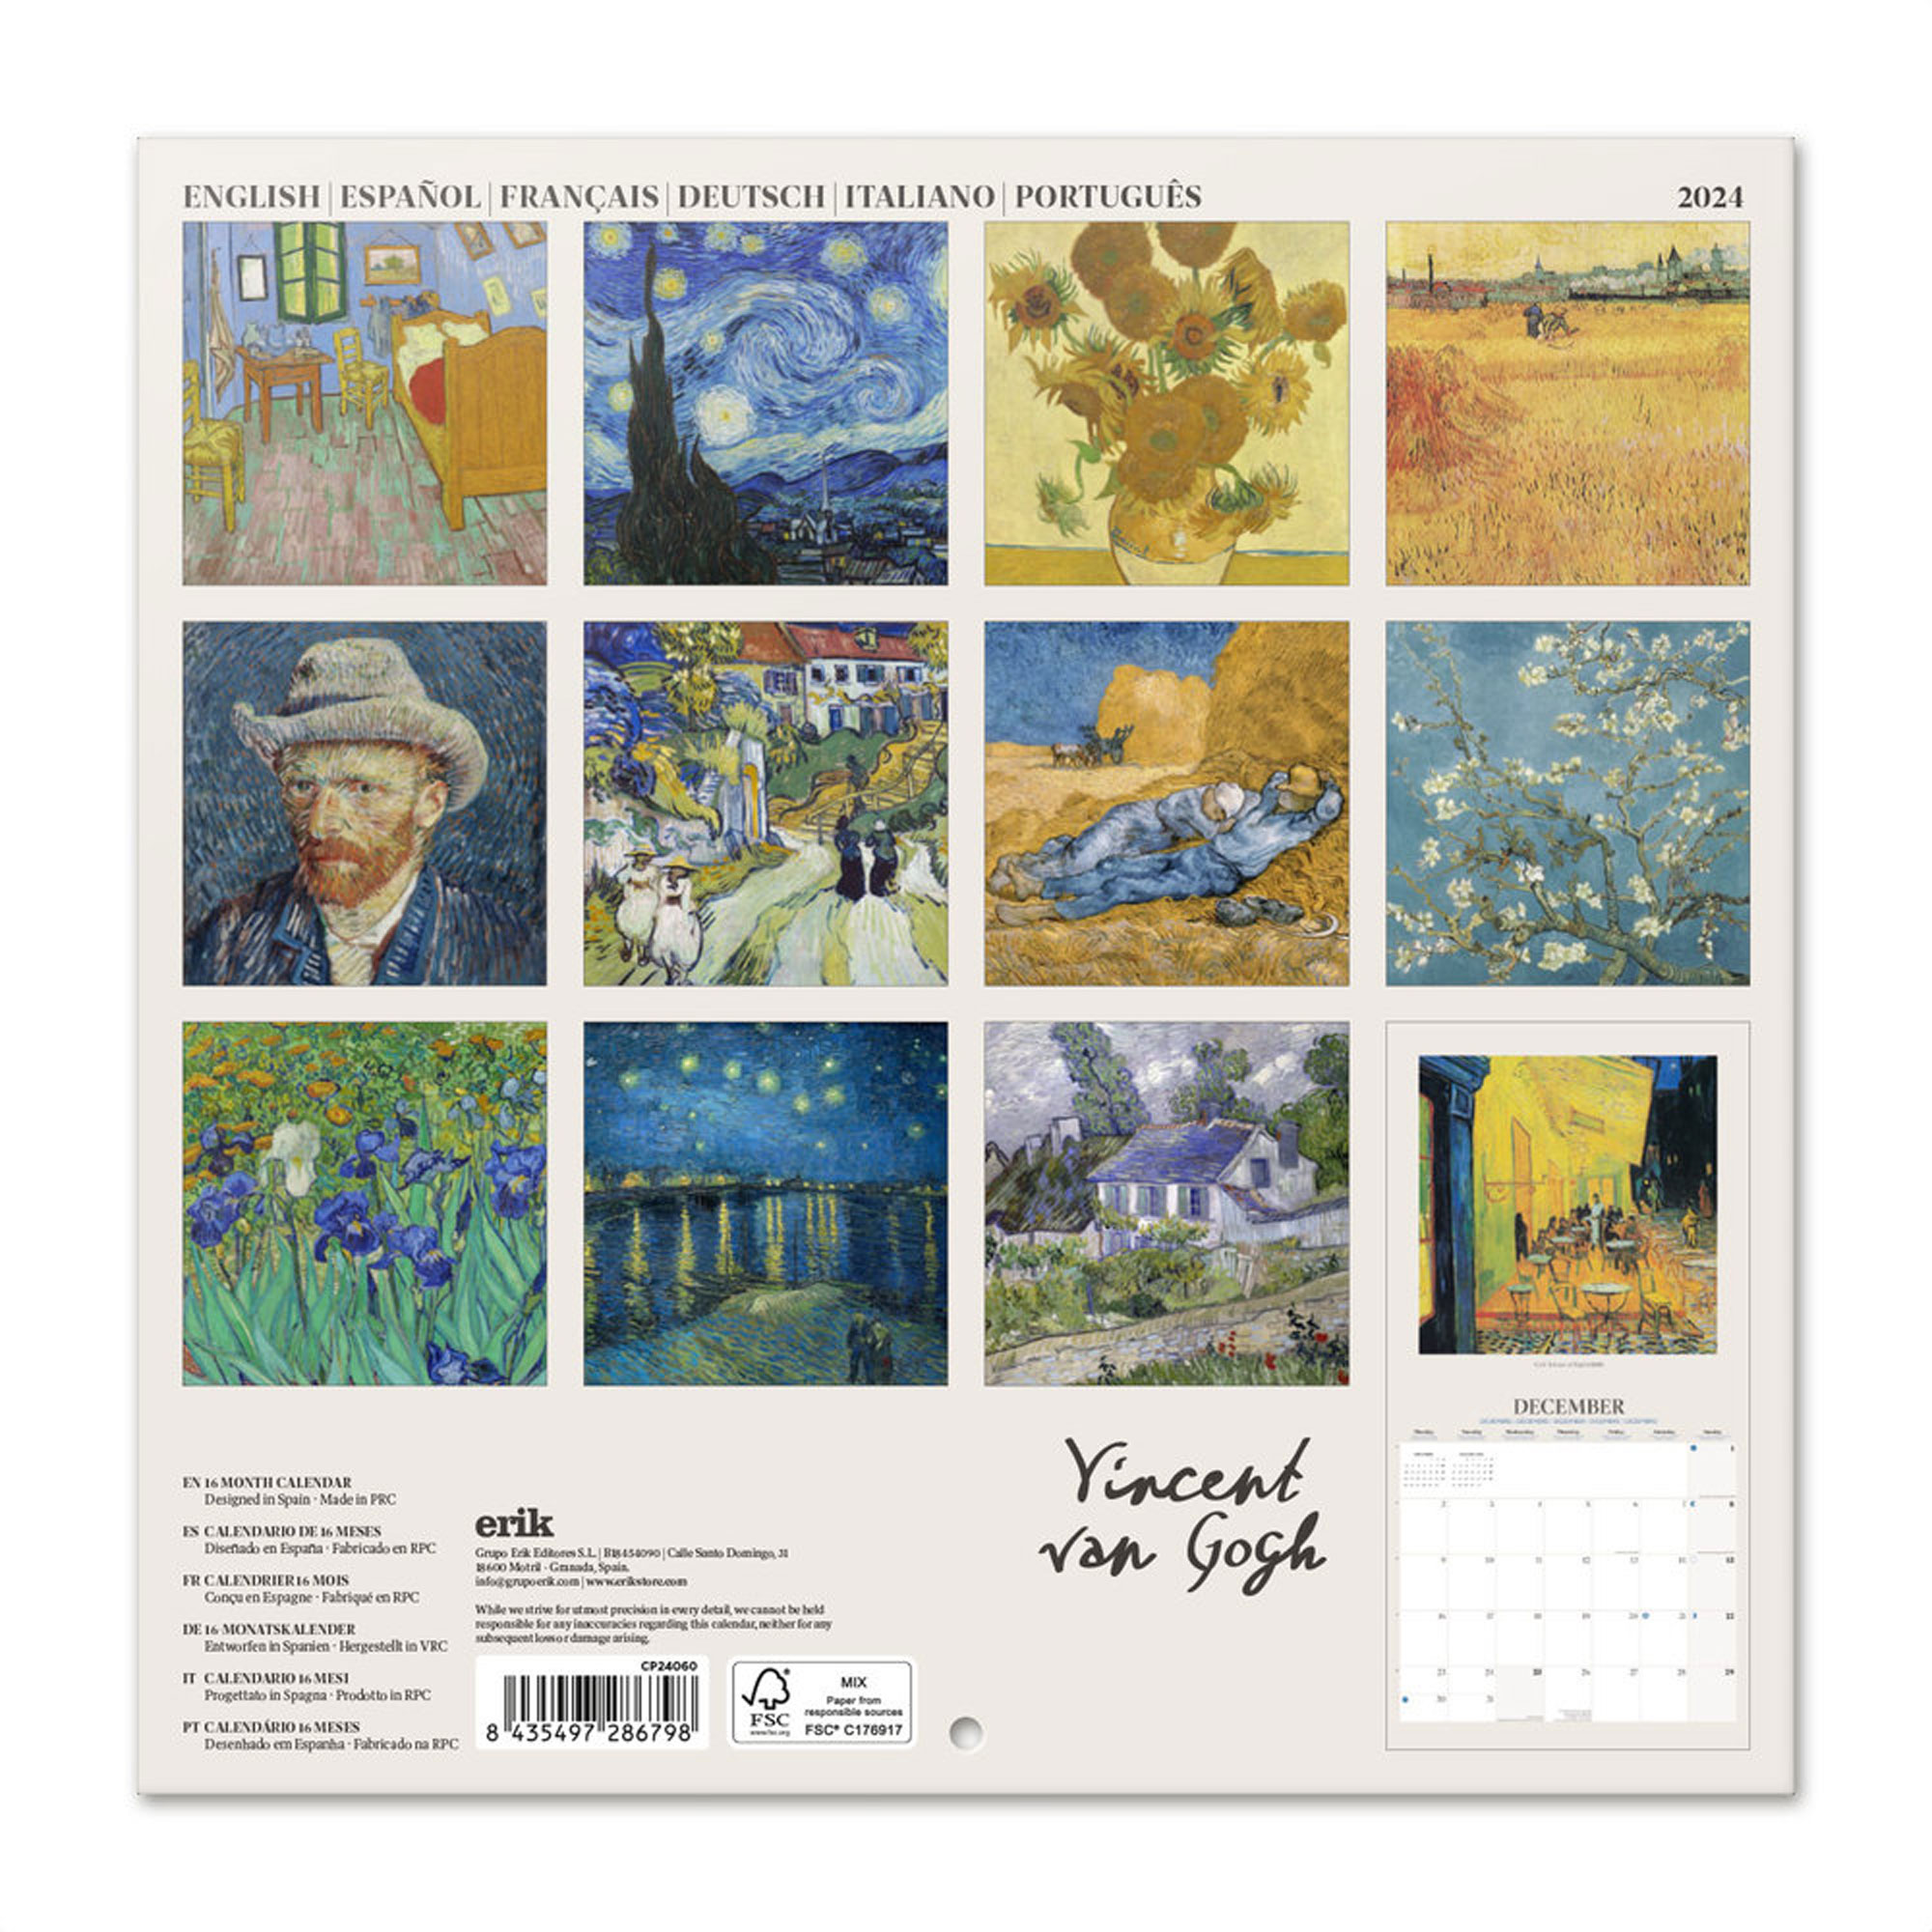 Kalender 2024 Van - Gogh